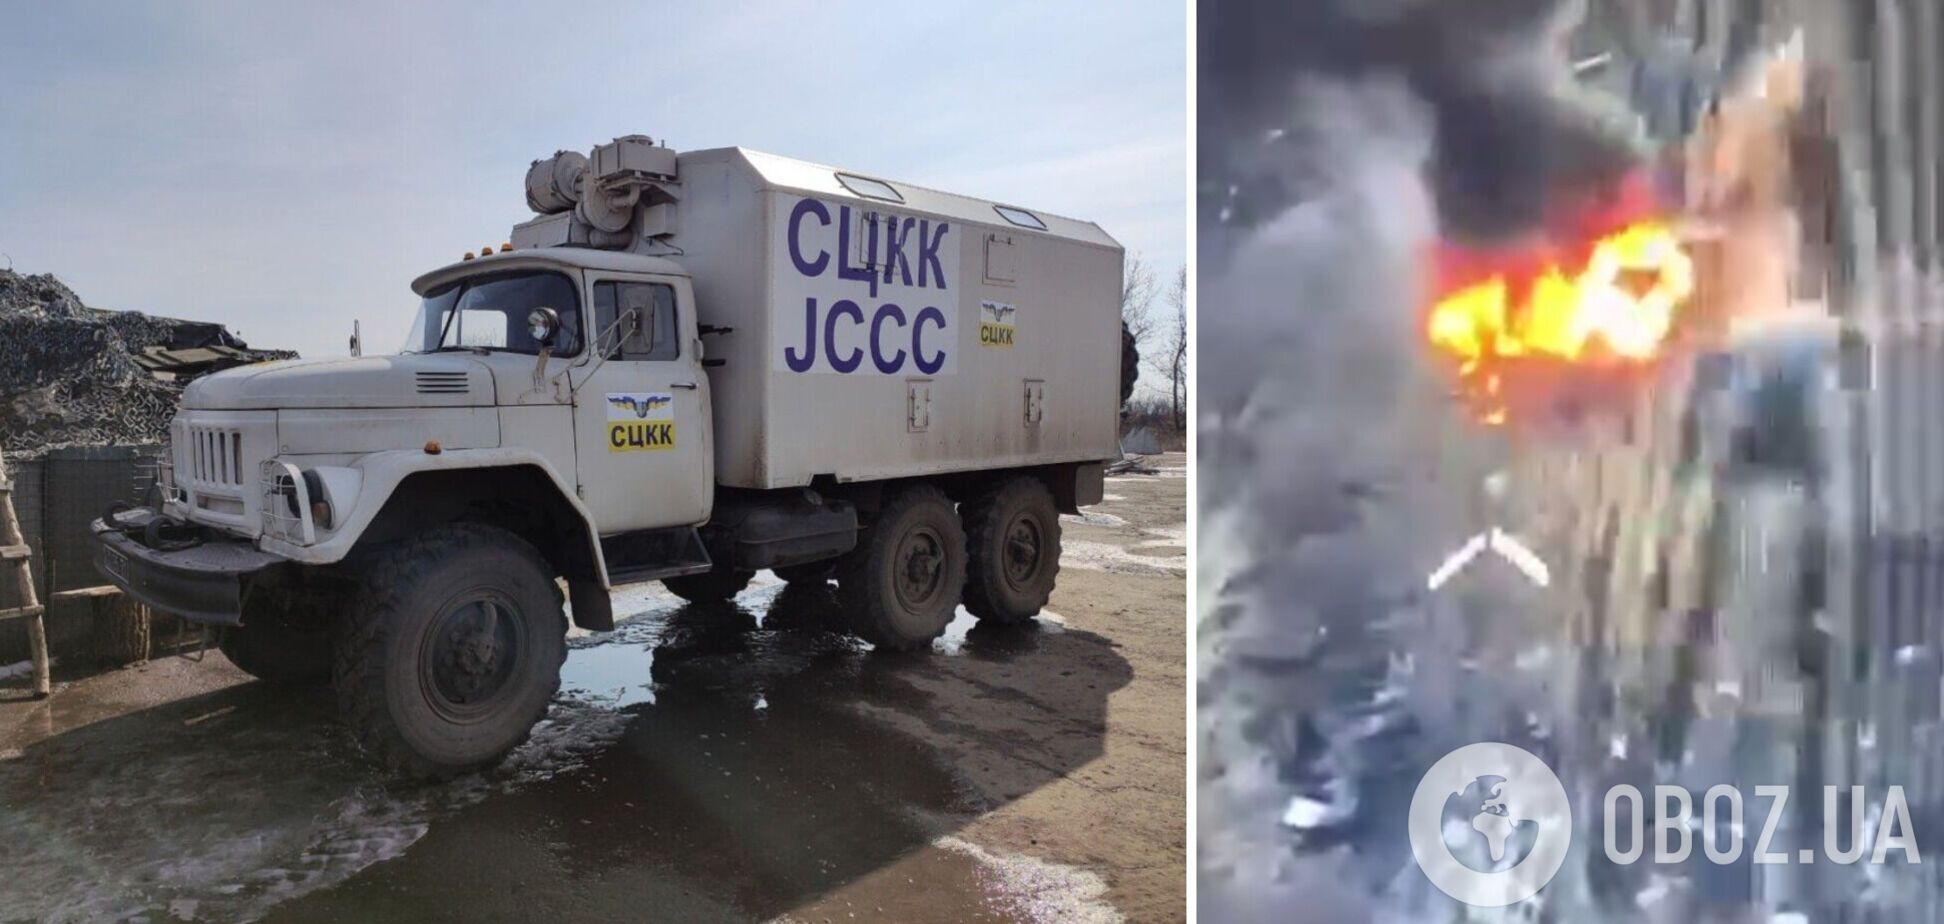 Оккупанты на Донбассе уничтожили украинский грузовик. Видео